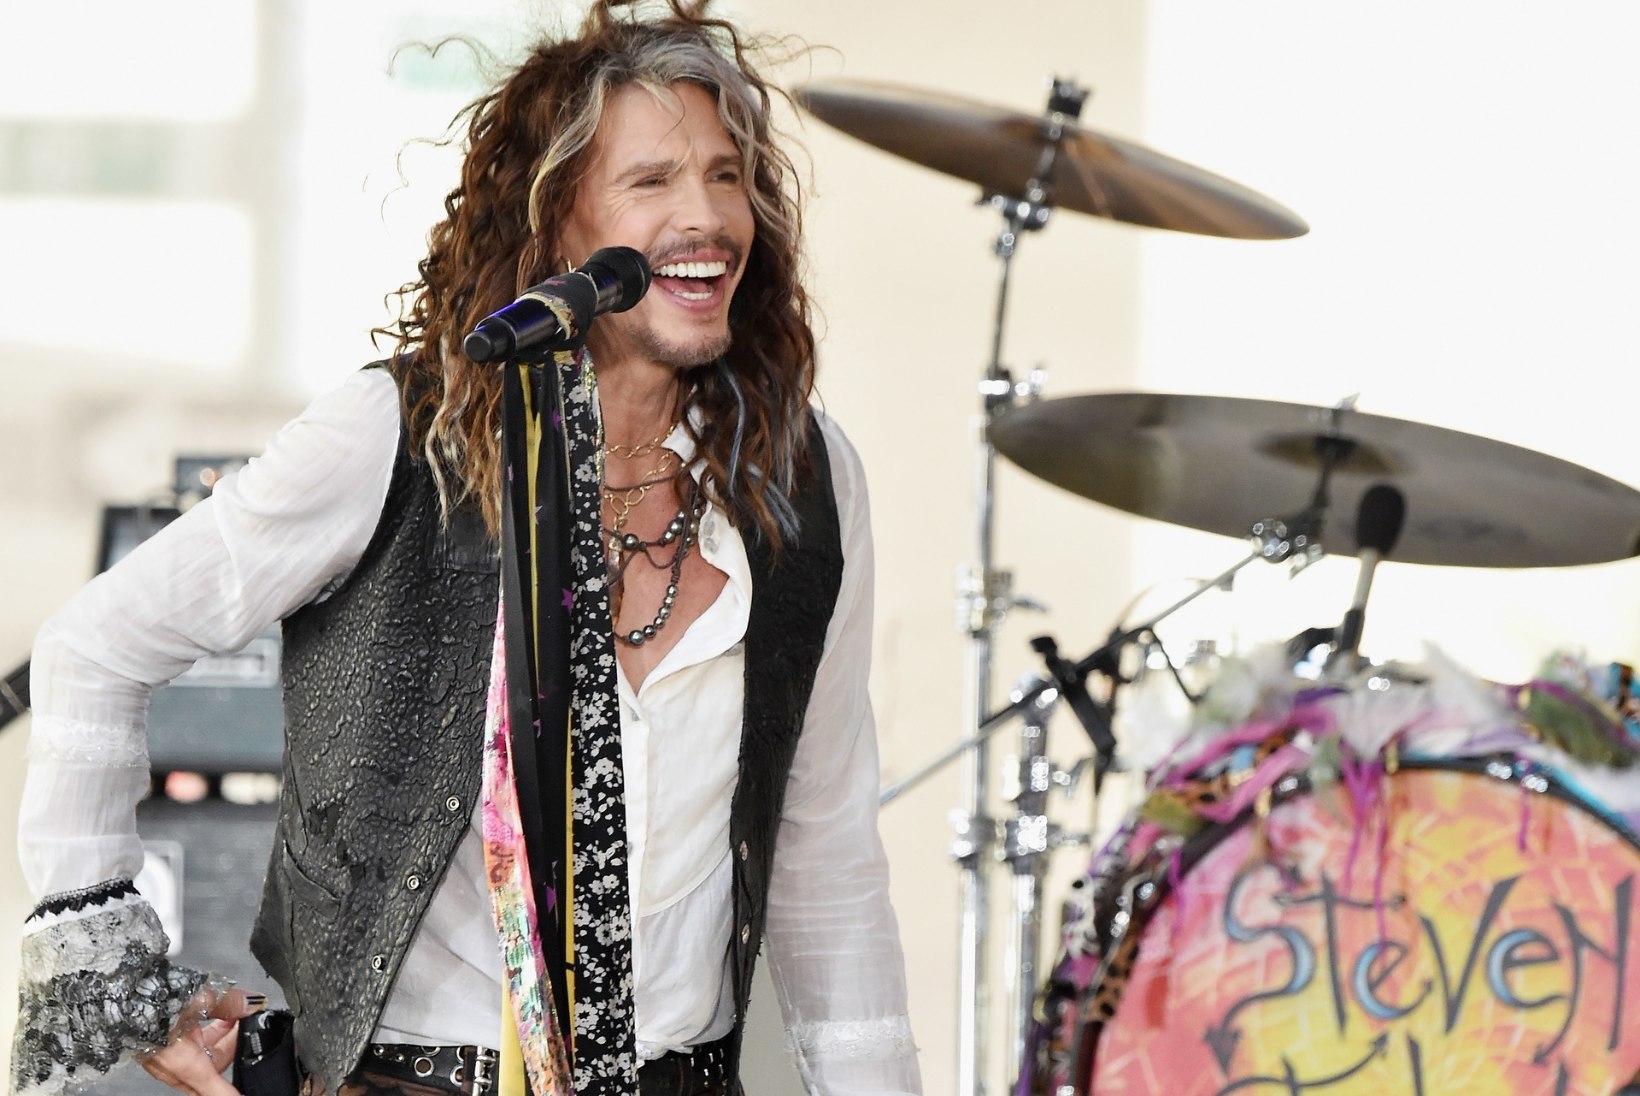 Aerosmithi laulja katkestas tervise tõttu turnee